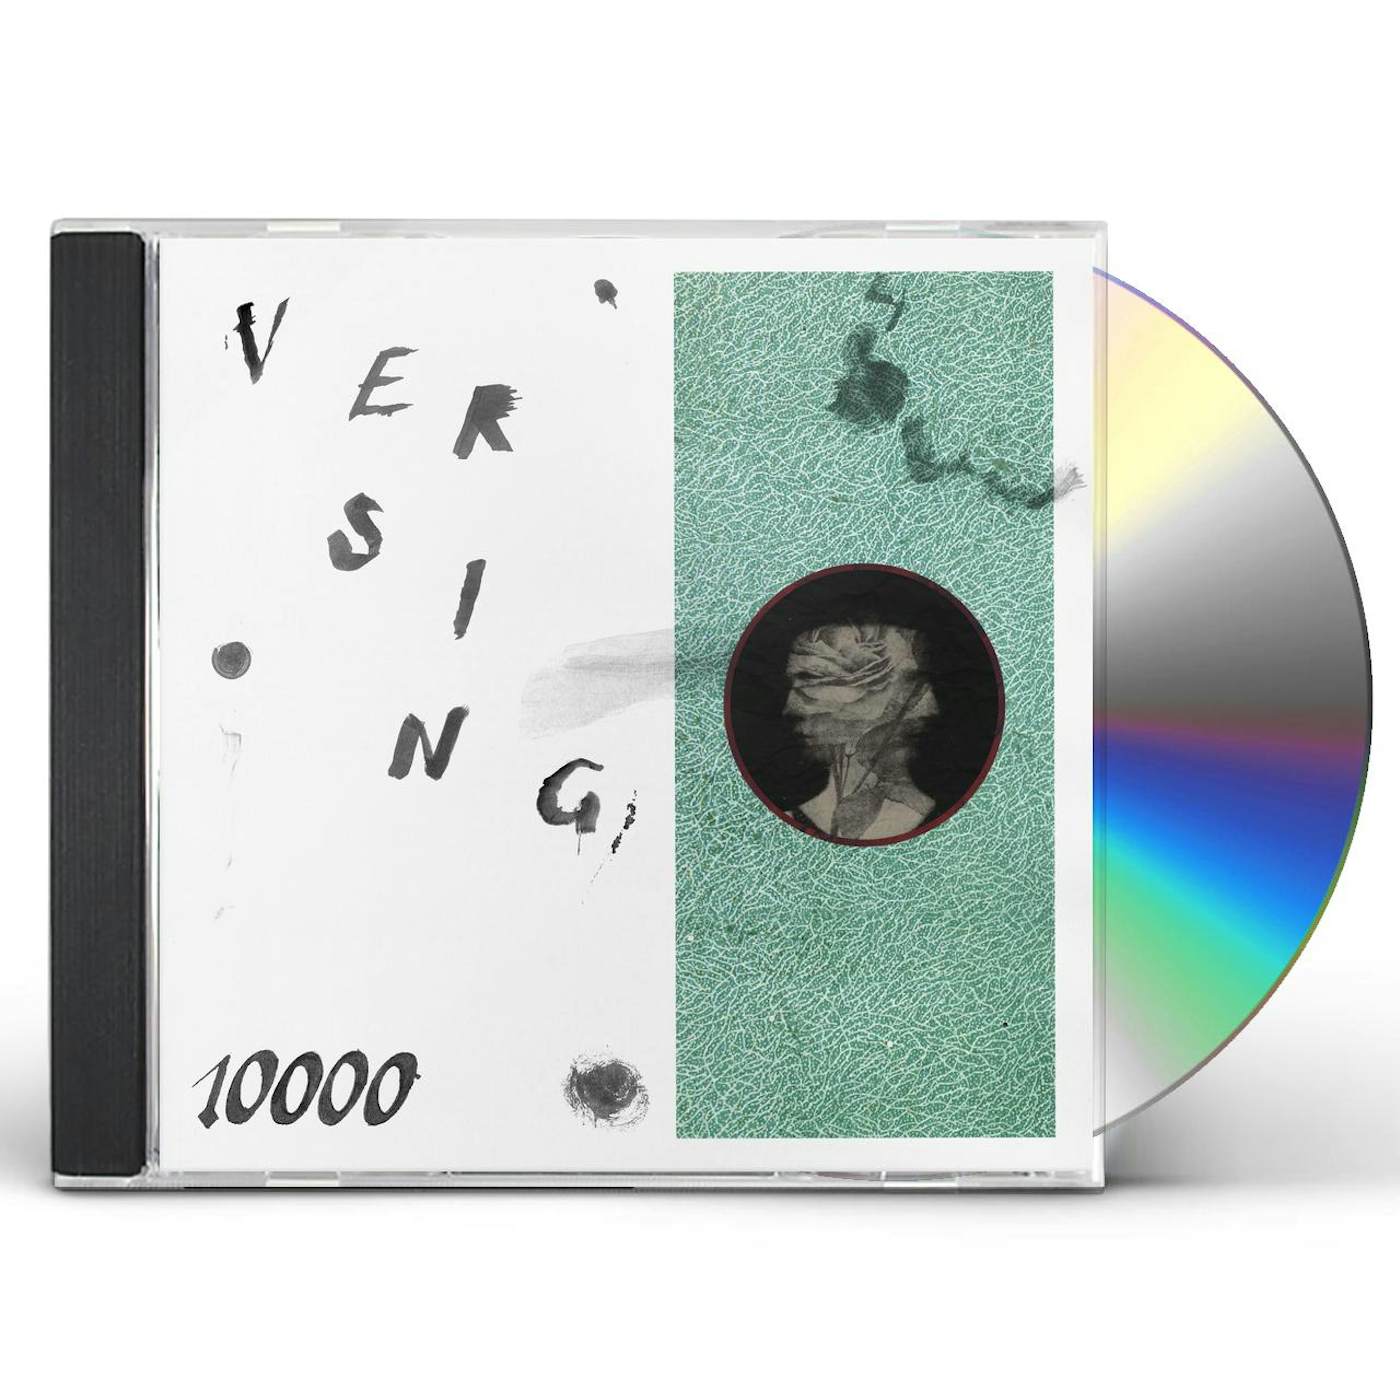 Versing 10000 CD